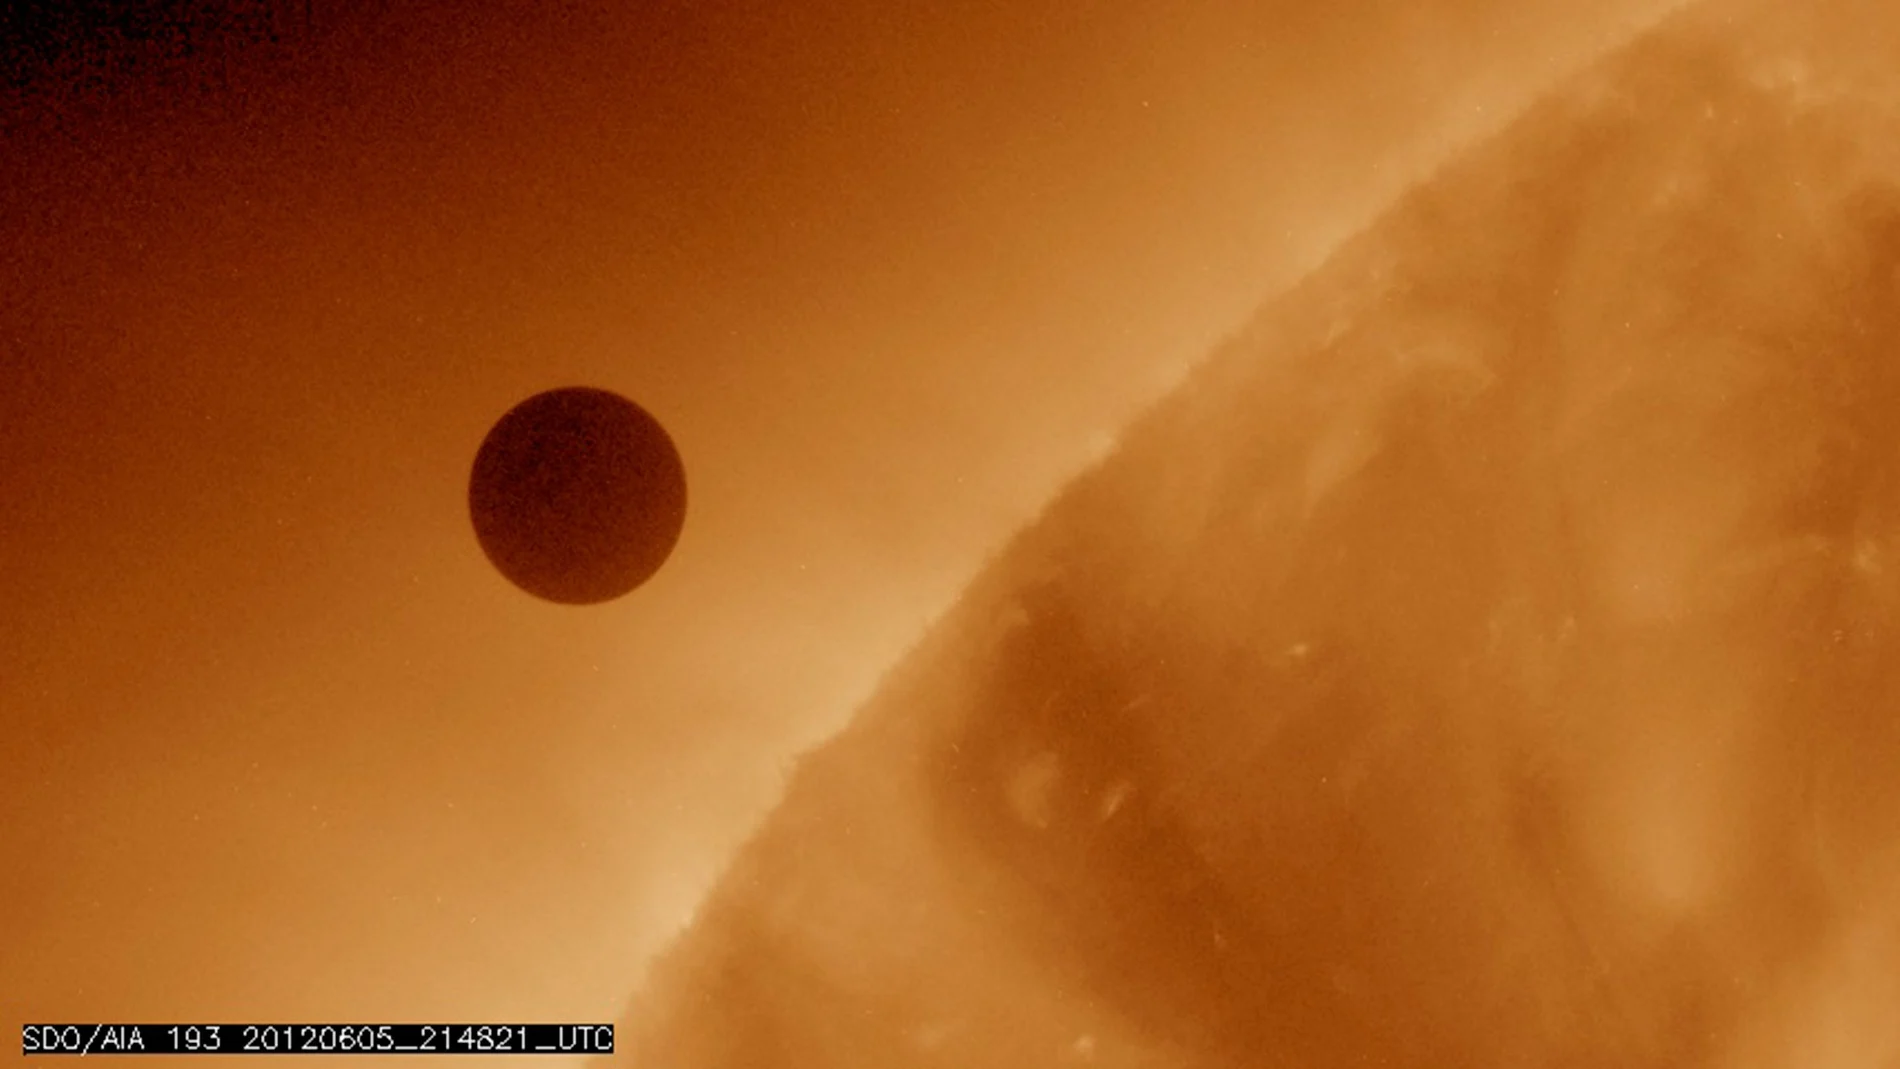 Imagen de Venus cortesía de la NASA